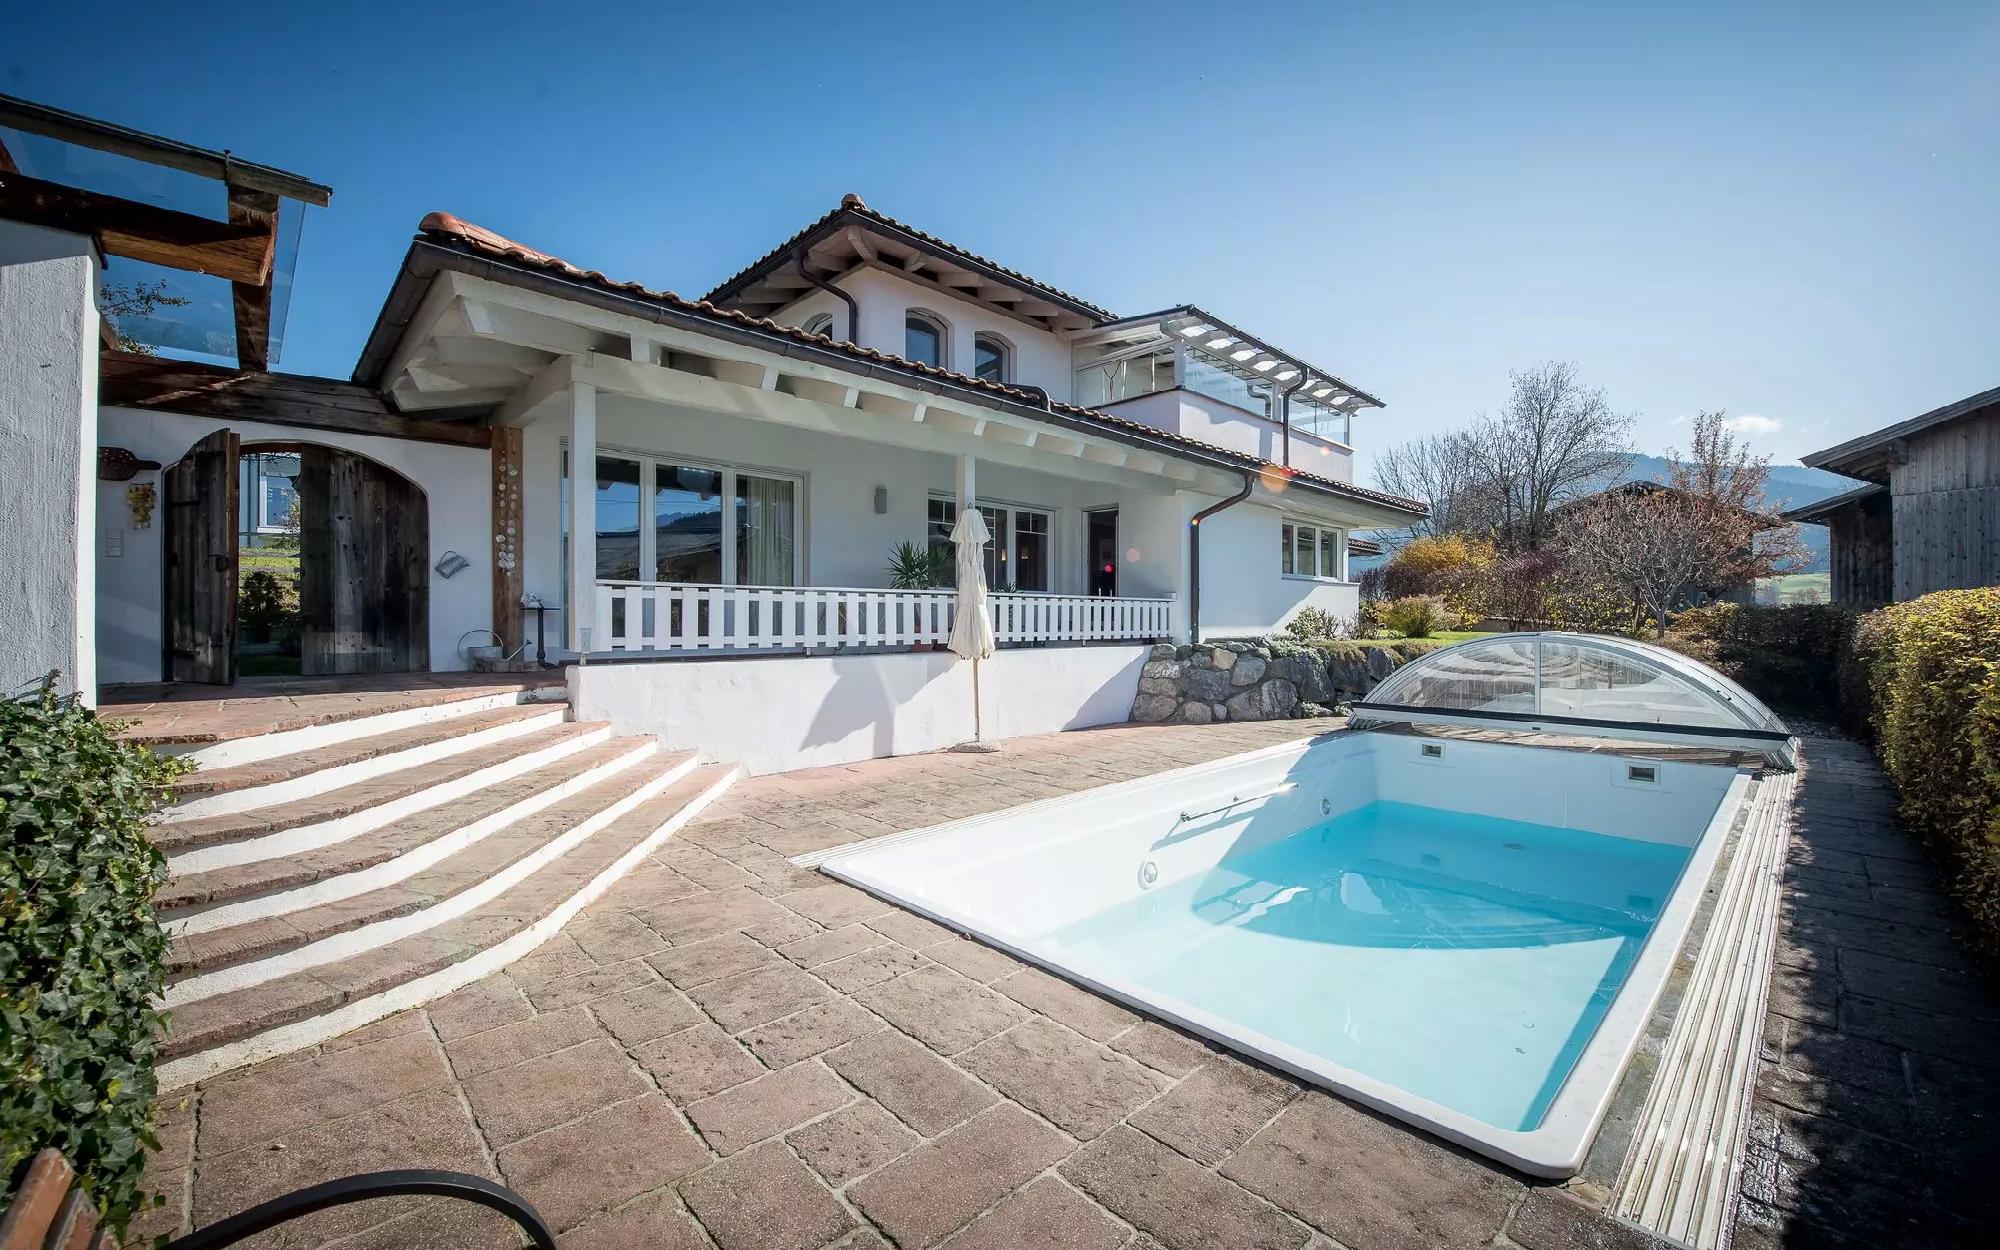 Mediterranean Villa in the snow Alps for Sale